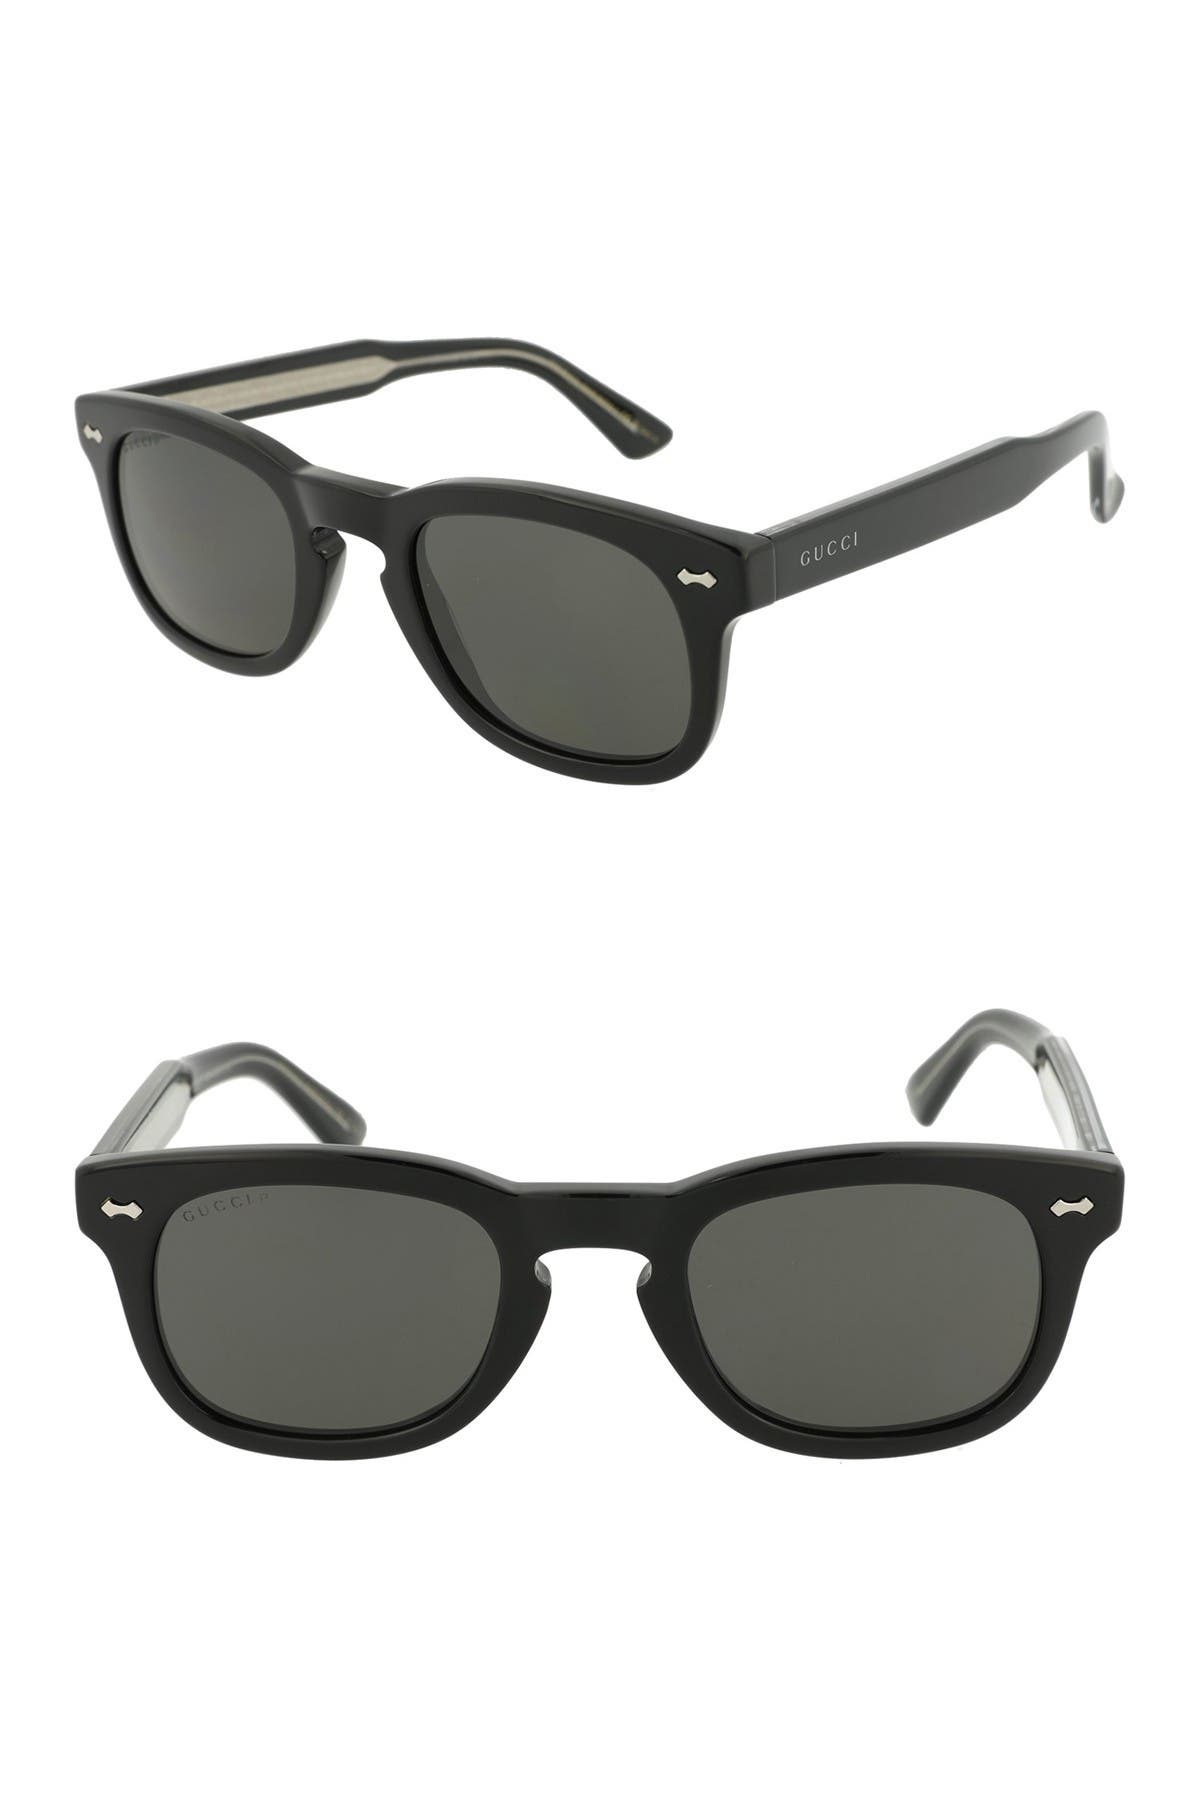 GUCCI | Core 49mm Square Sunglasses 